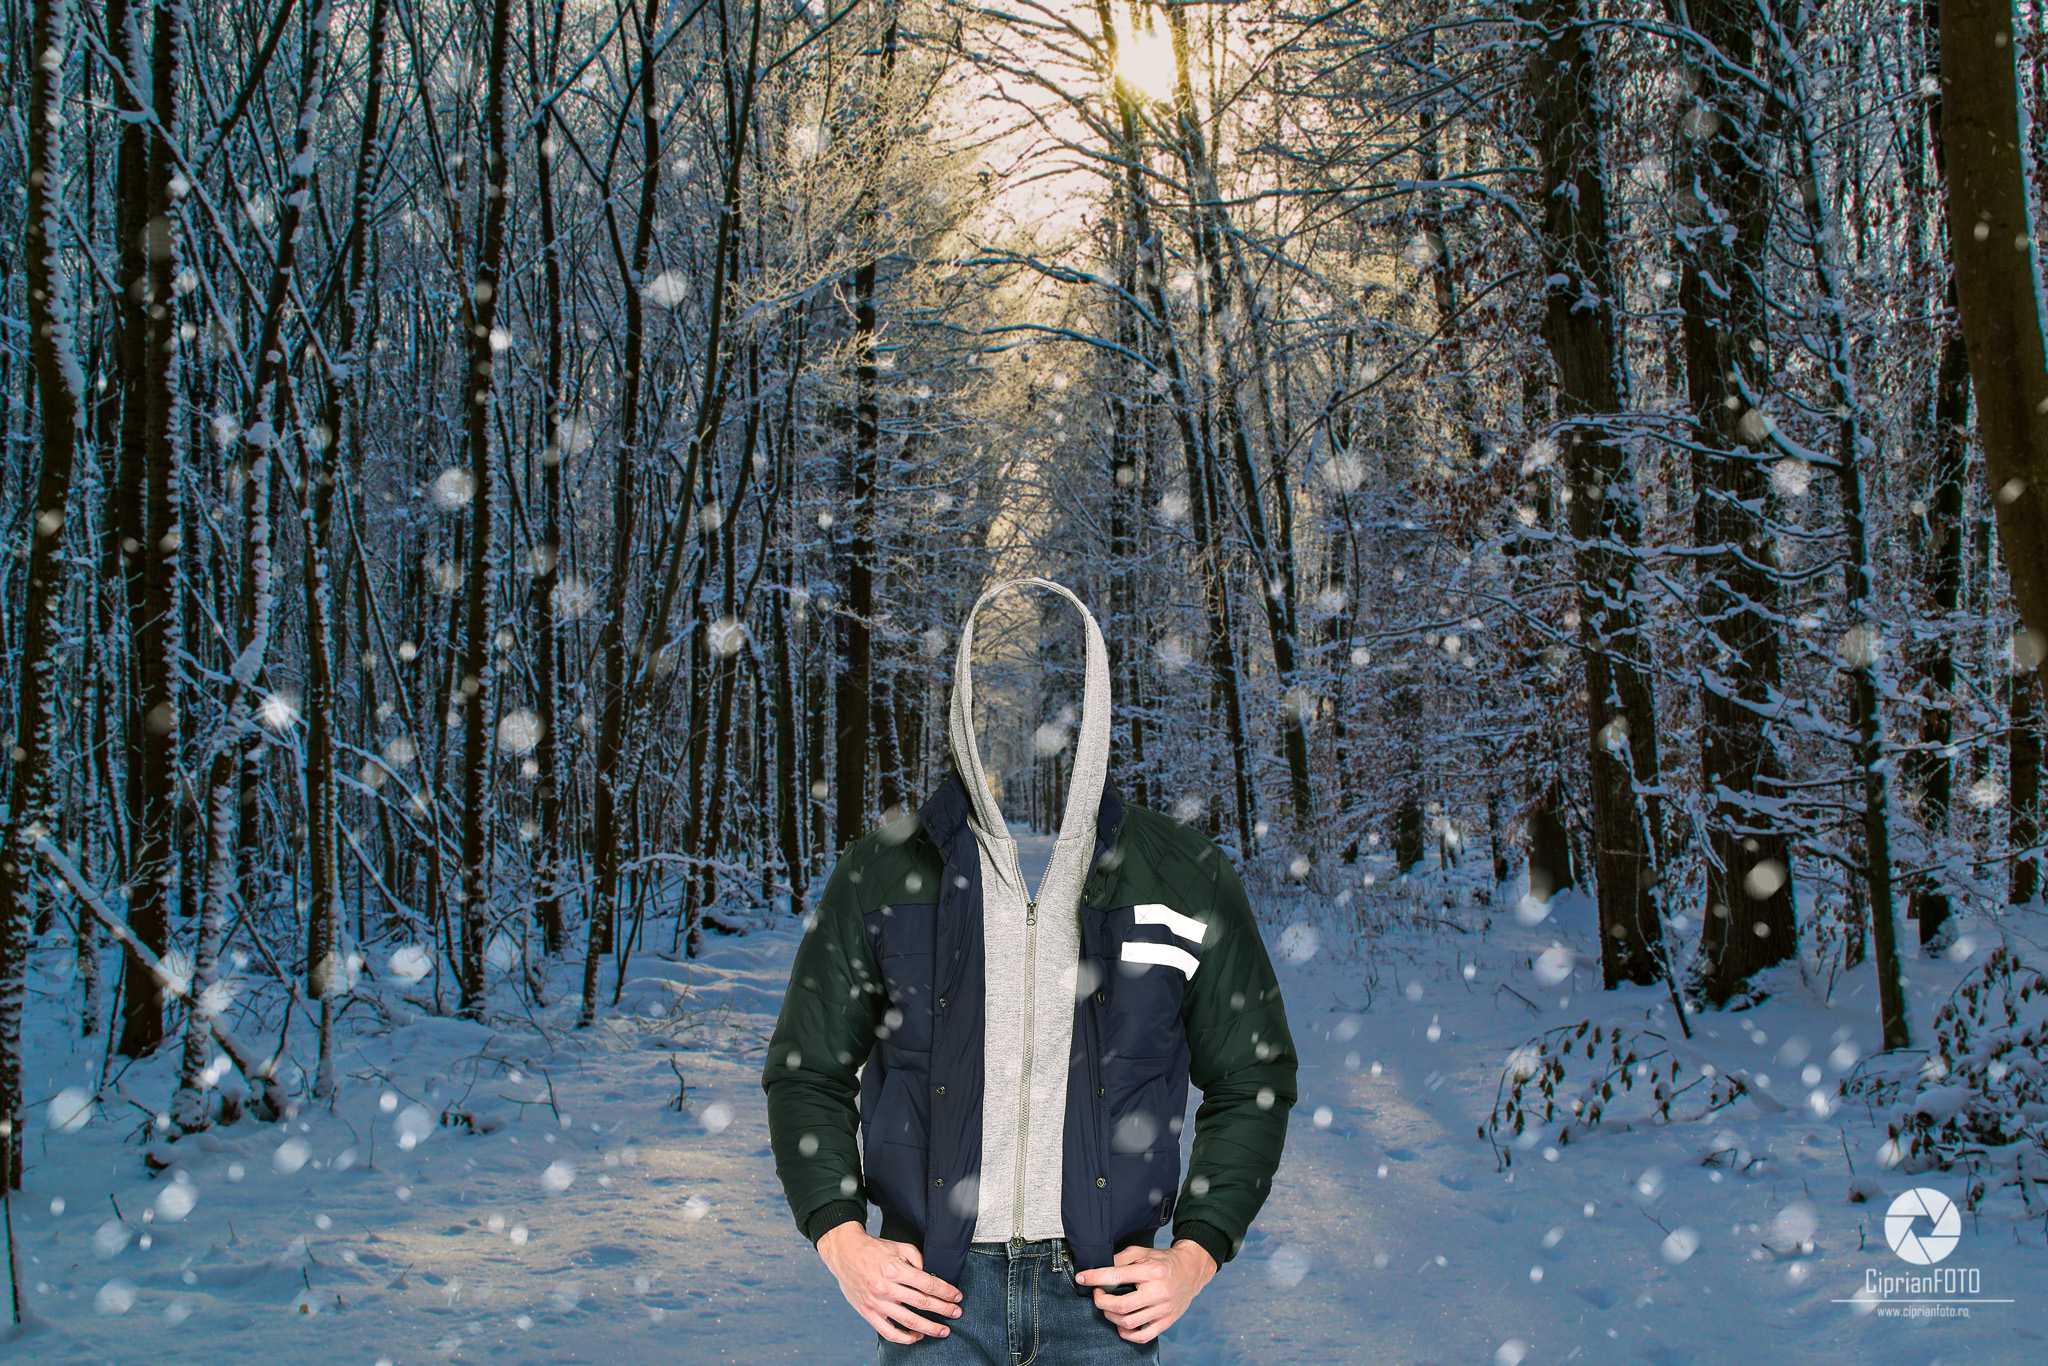 In The Forest, Photoshop Manipulation Tutorial, CiprianFOTO